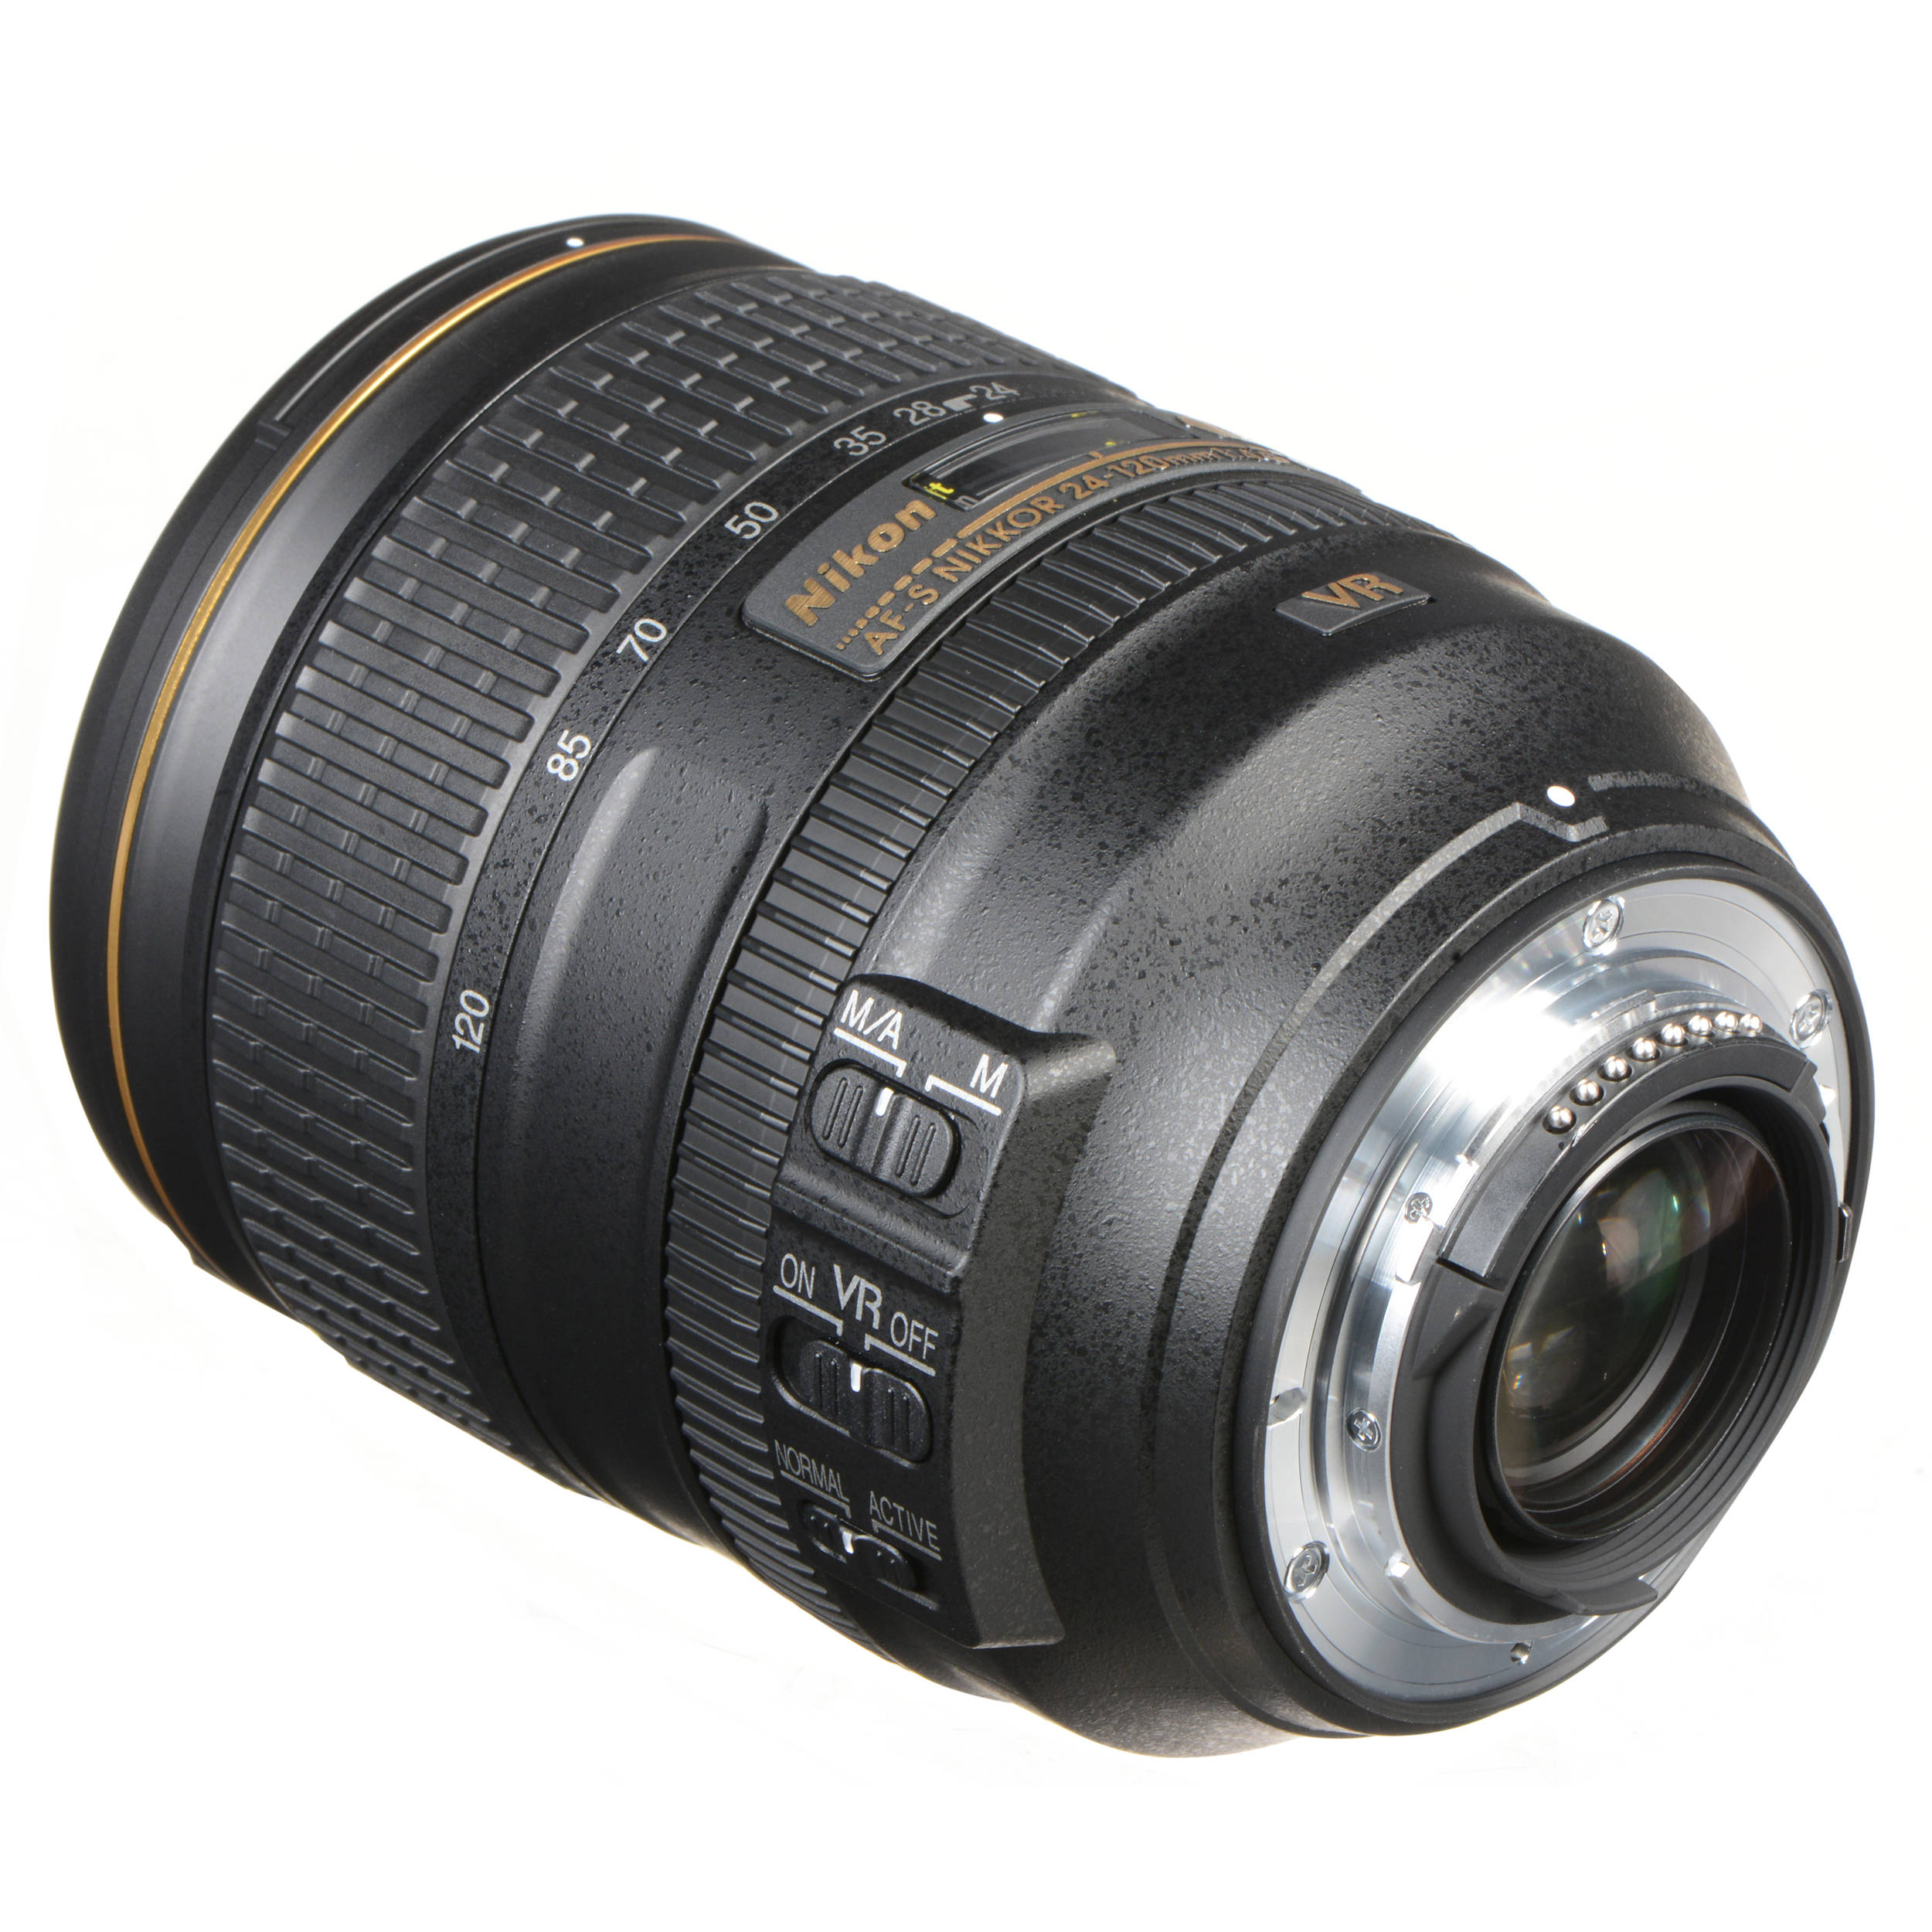 Nikon 24 1mm F 4g Ed Vr Af S Nikkor Lens 2193 B H Photo